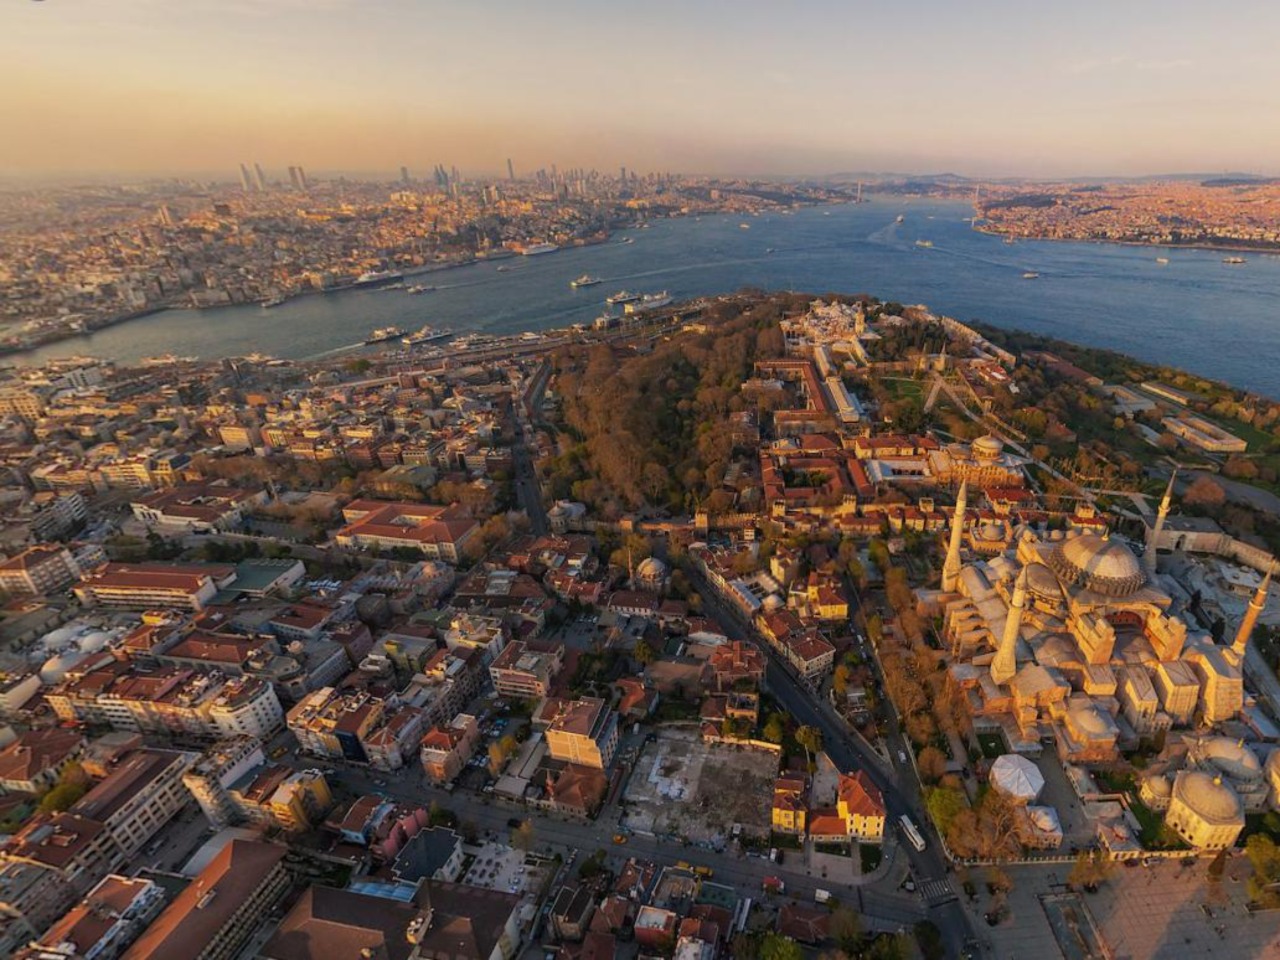 Обзорный тур по Стамбулу на вертолете | Цена 2550€, отзывы, описание экскурсии